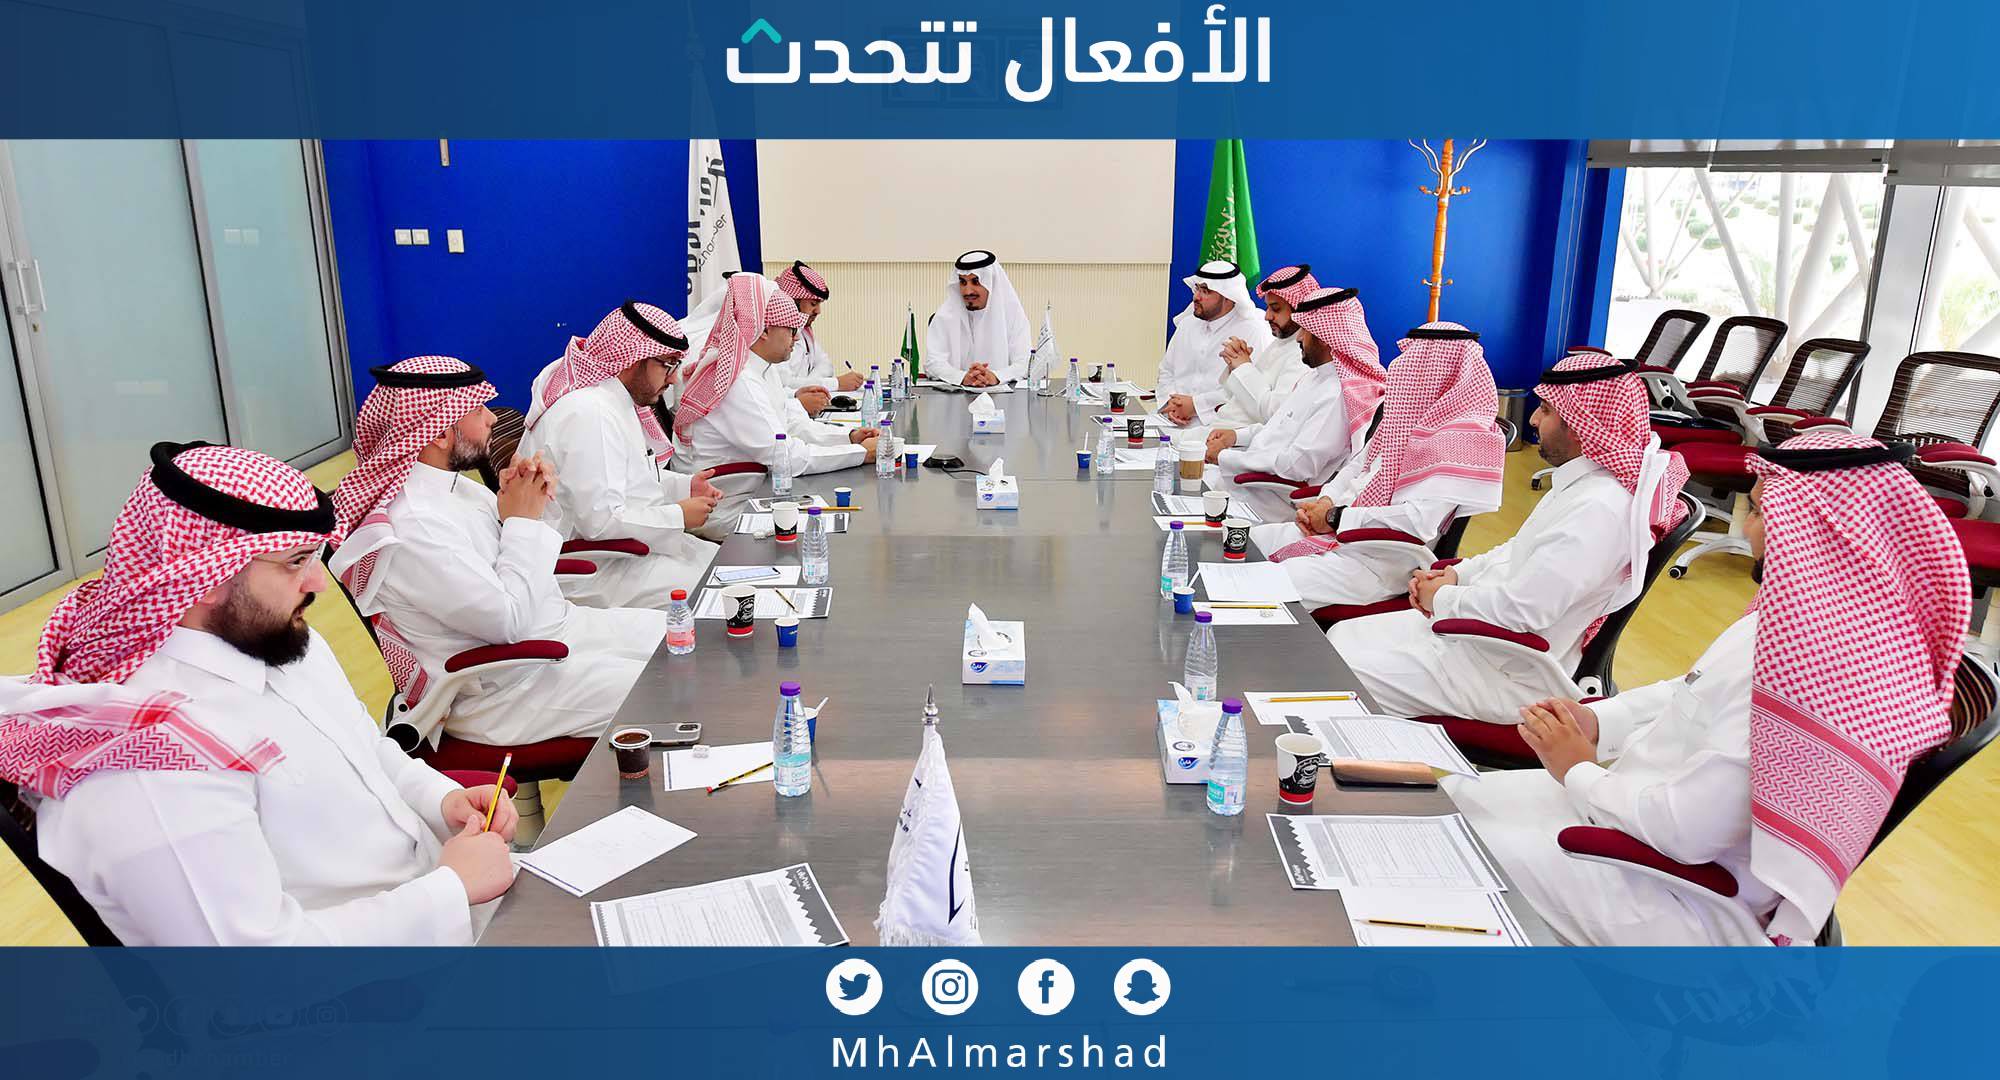 عقدت اللجنة العقارية بـغرفة الرياض اجتماعها وناقشت عدد من الموضوعات منها إجراءات شهادة امتثال المباني والتسجيل العيني للعقار